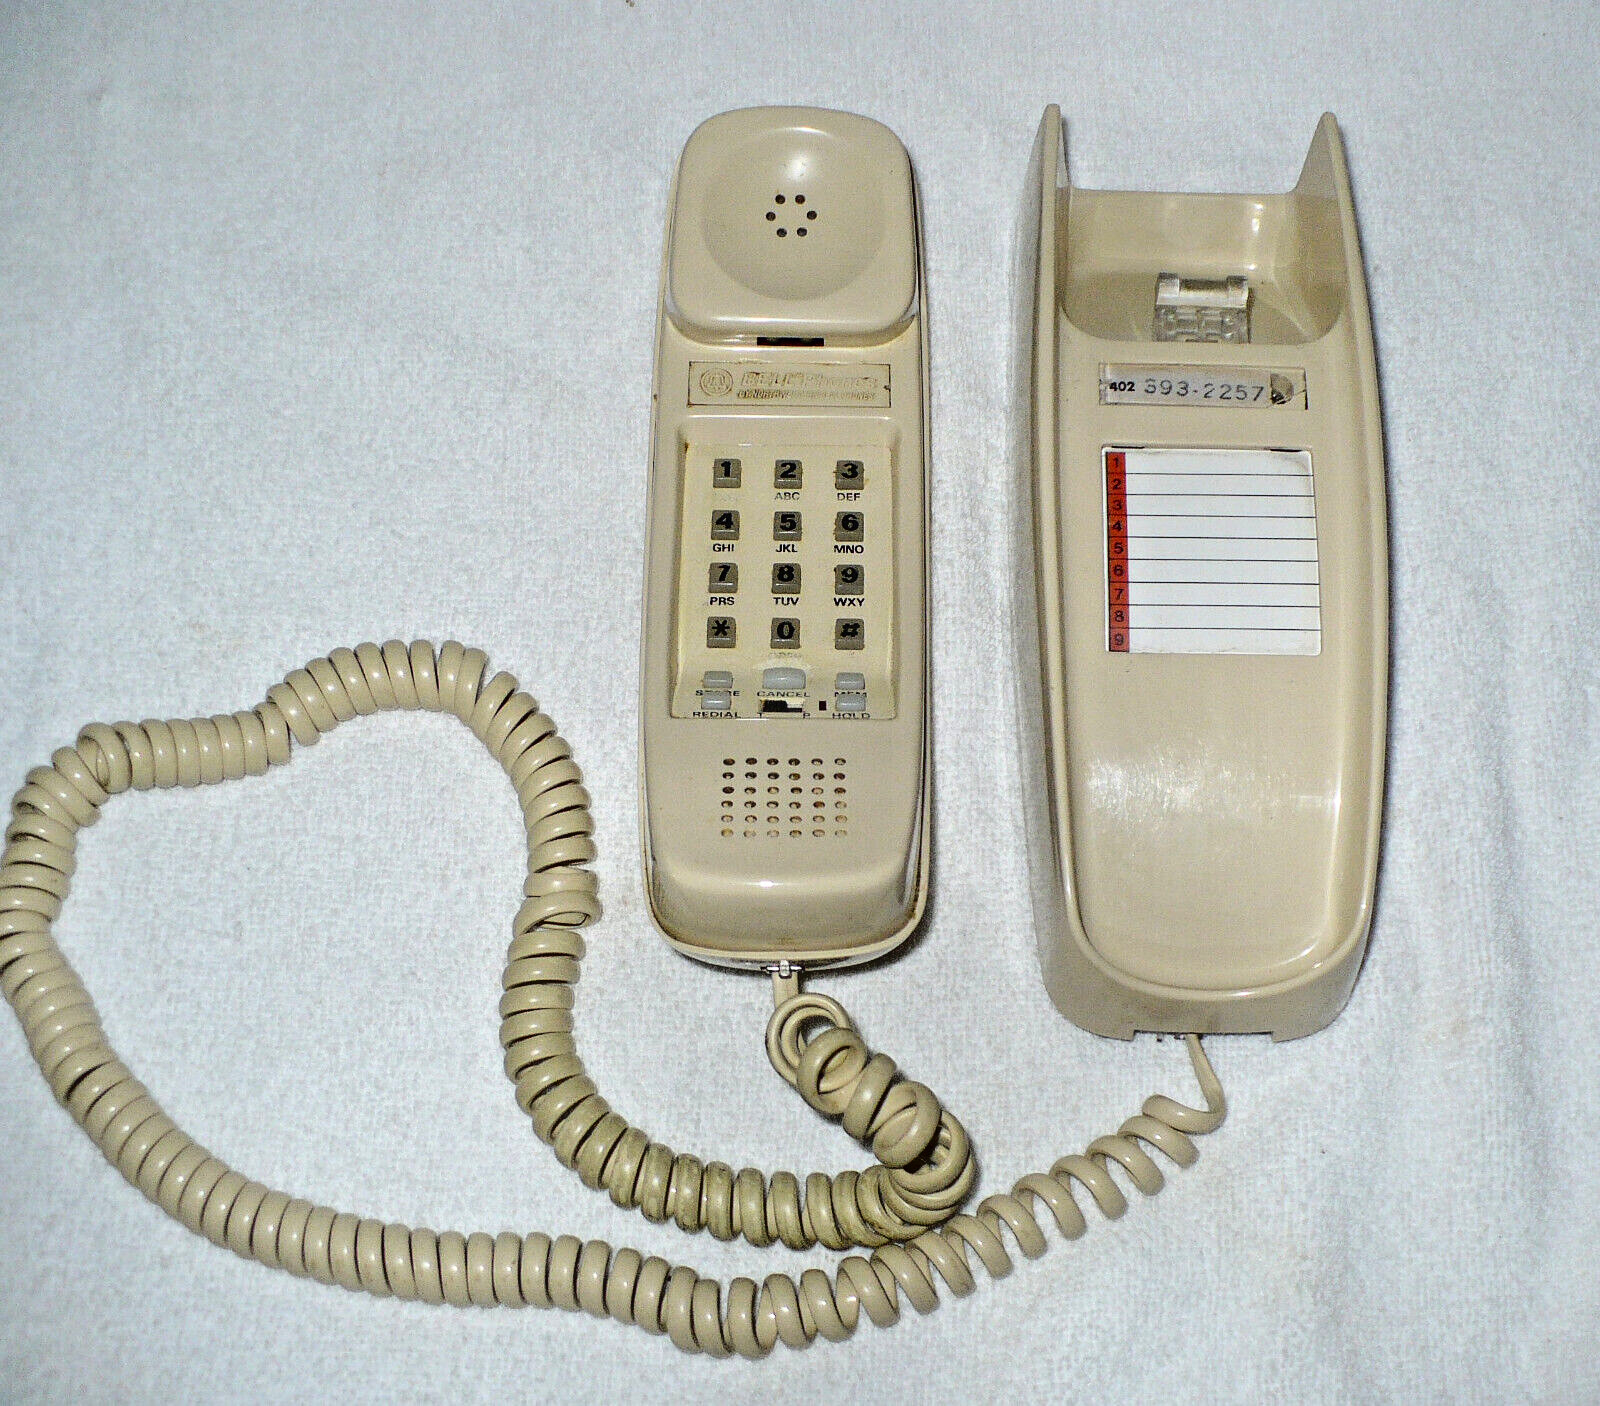 Vintage Northwestern Bell Wall Phone - Favorite Plus -52415,  Tan and it Works